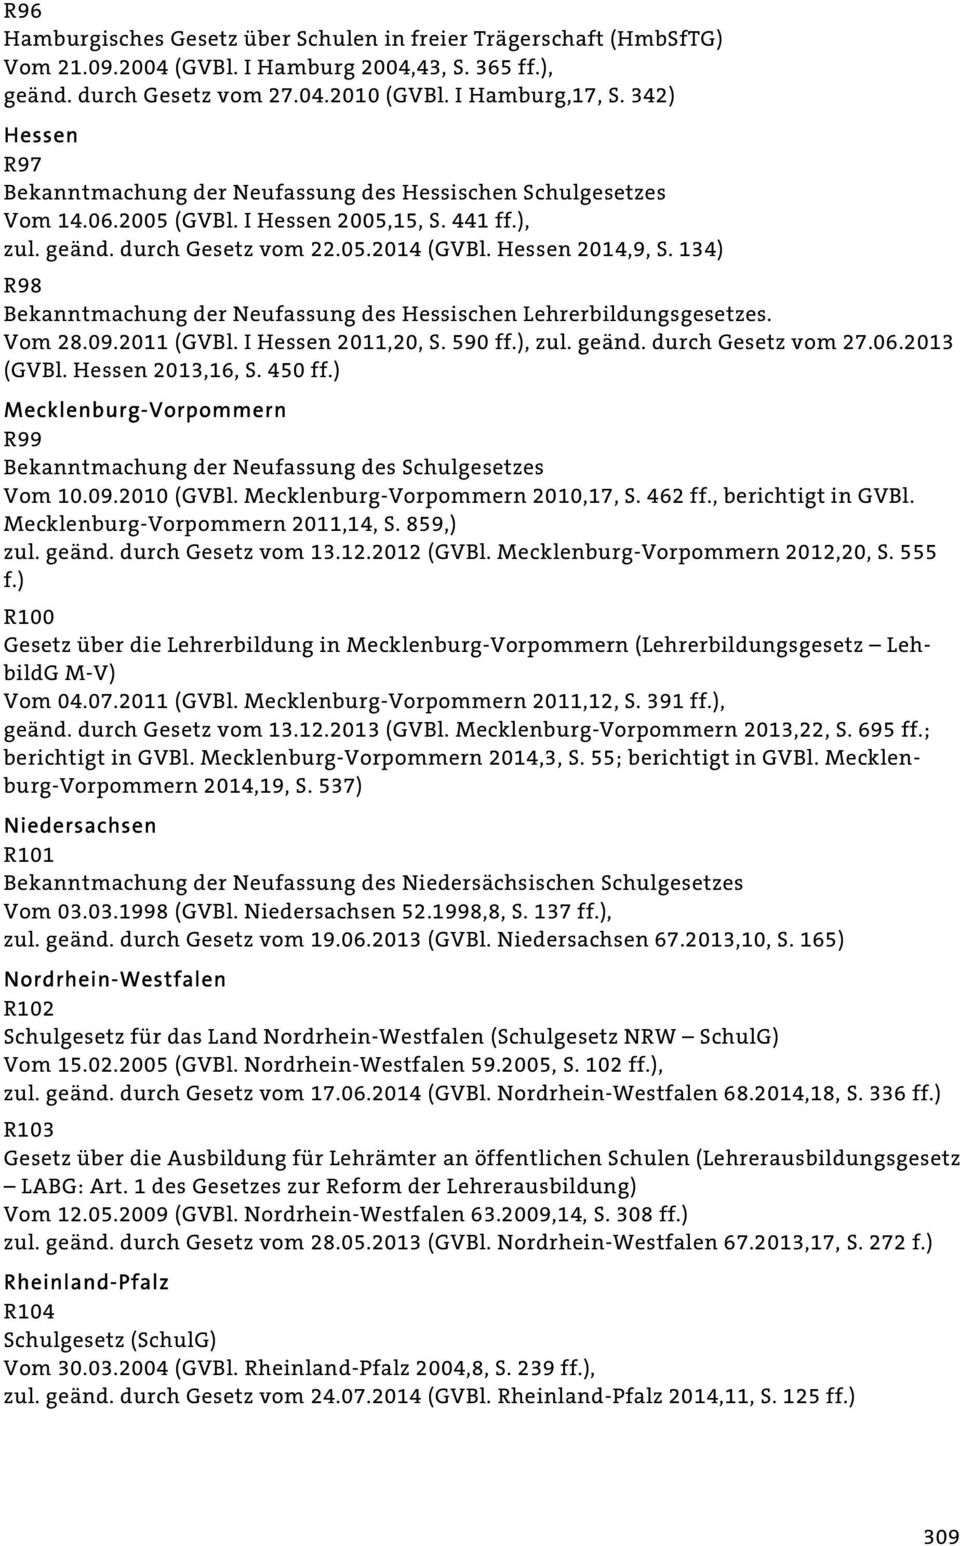 134) R98 Bekanntmachung der Neufassung des Hessischen Lehrerbildungsgesetzes. Vom 28.09.2011 (GVBl. I Hessen 2011,20, S. 590 ff.), zul. geänd. durch Gesetz vom 27.06.2013 (GVBl. Hessen 2013,16, S.